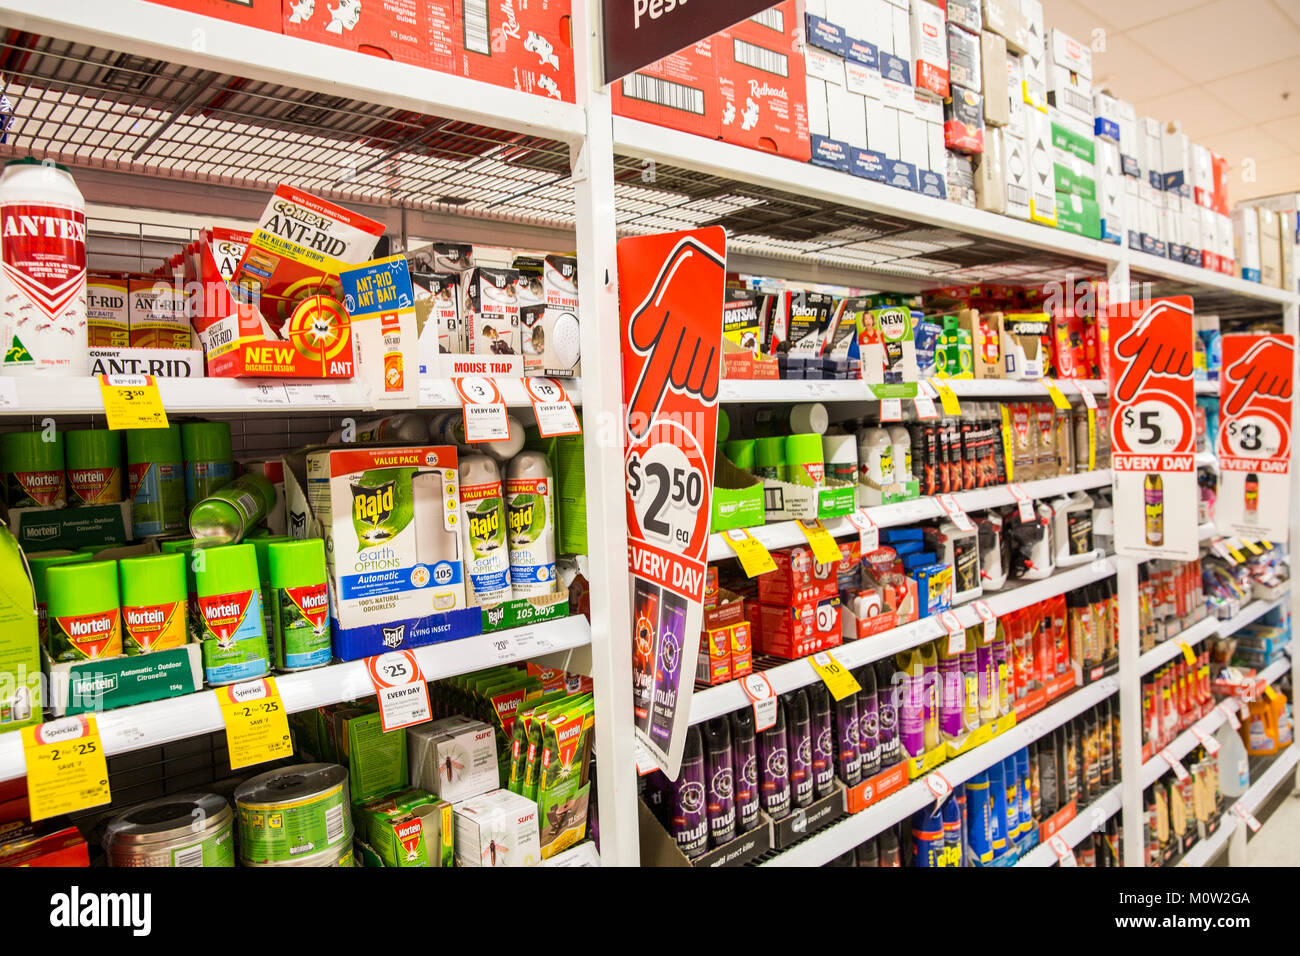 Coles Supermarkt in Australien verkaufen Insekt Sprays, Repellentien und Ant rid, auch Mosquito Sprays und Produkte von mortein, Australien Stockfoto